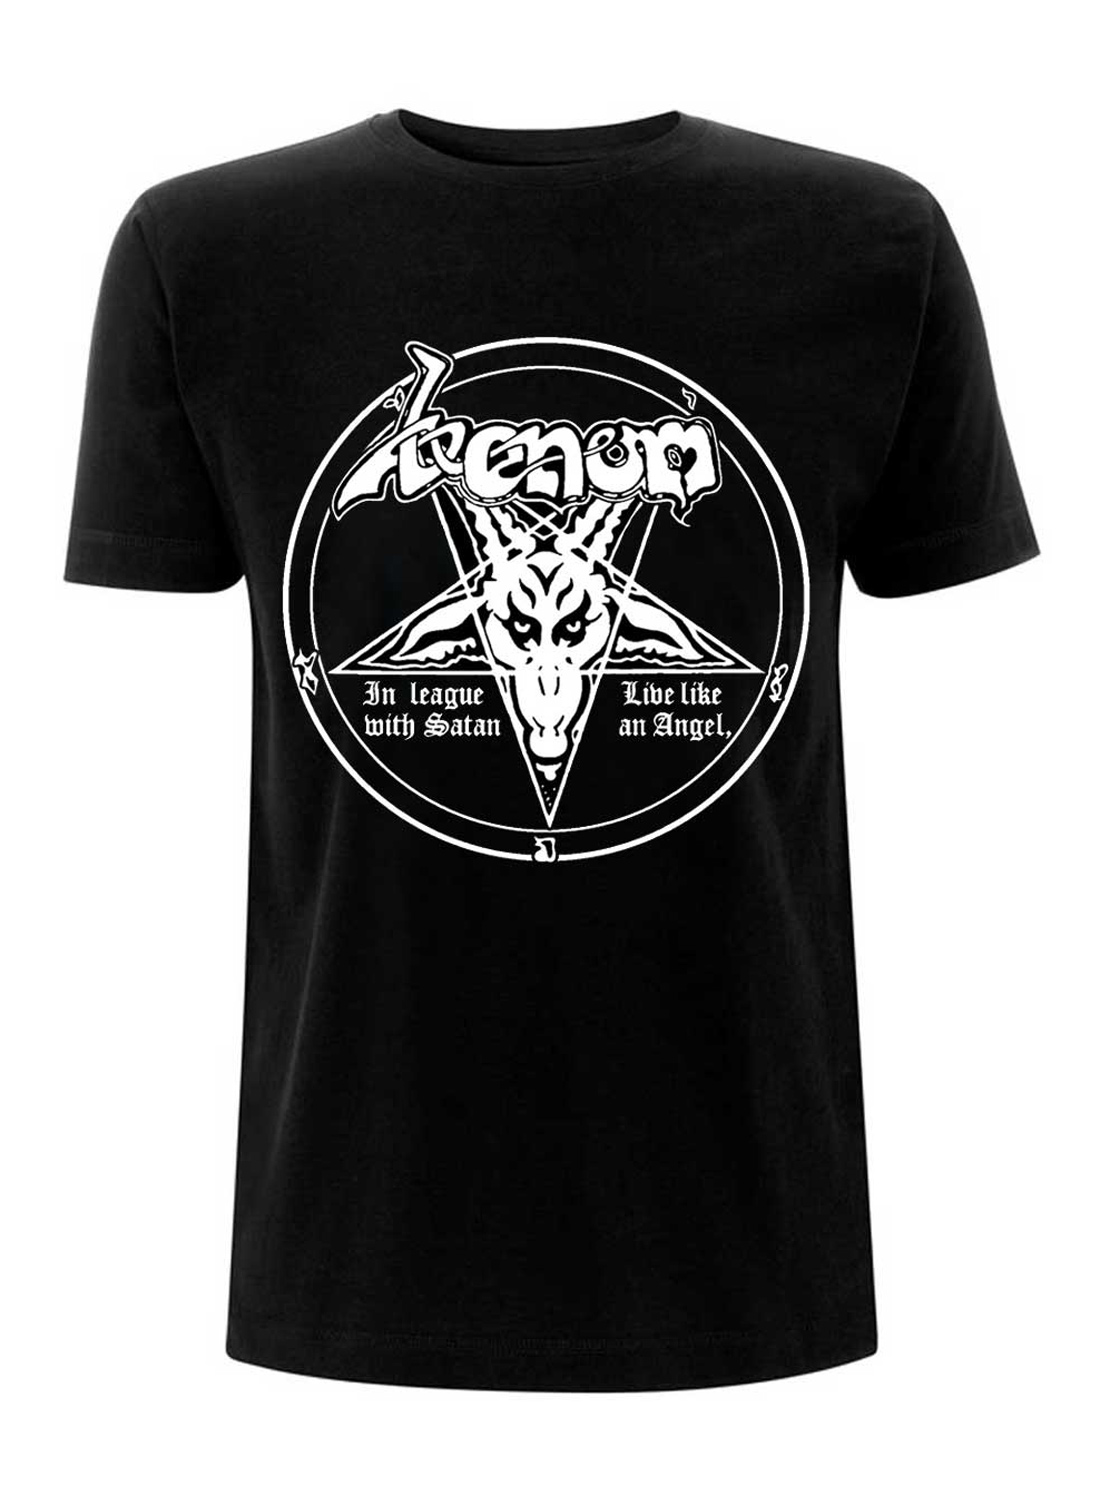 Venom In League With Satan T-shirt